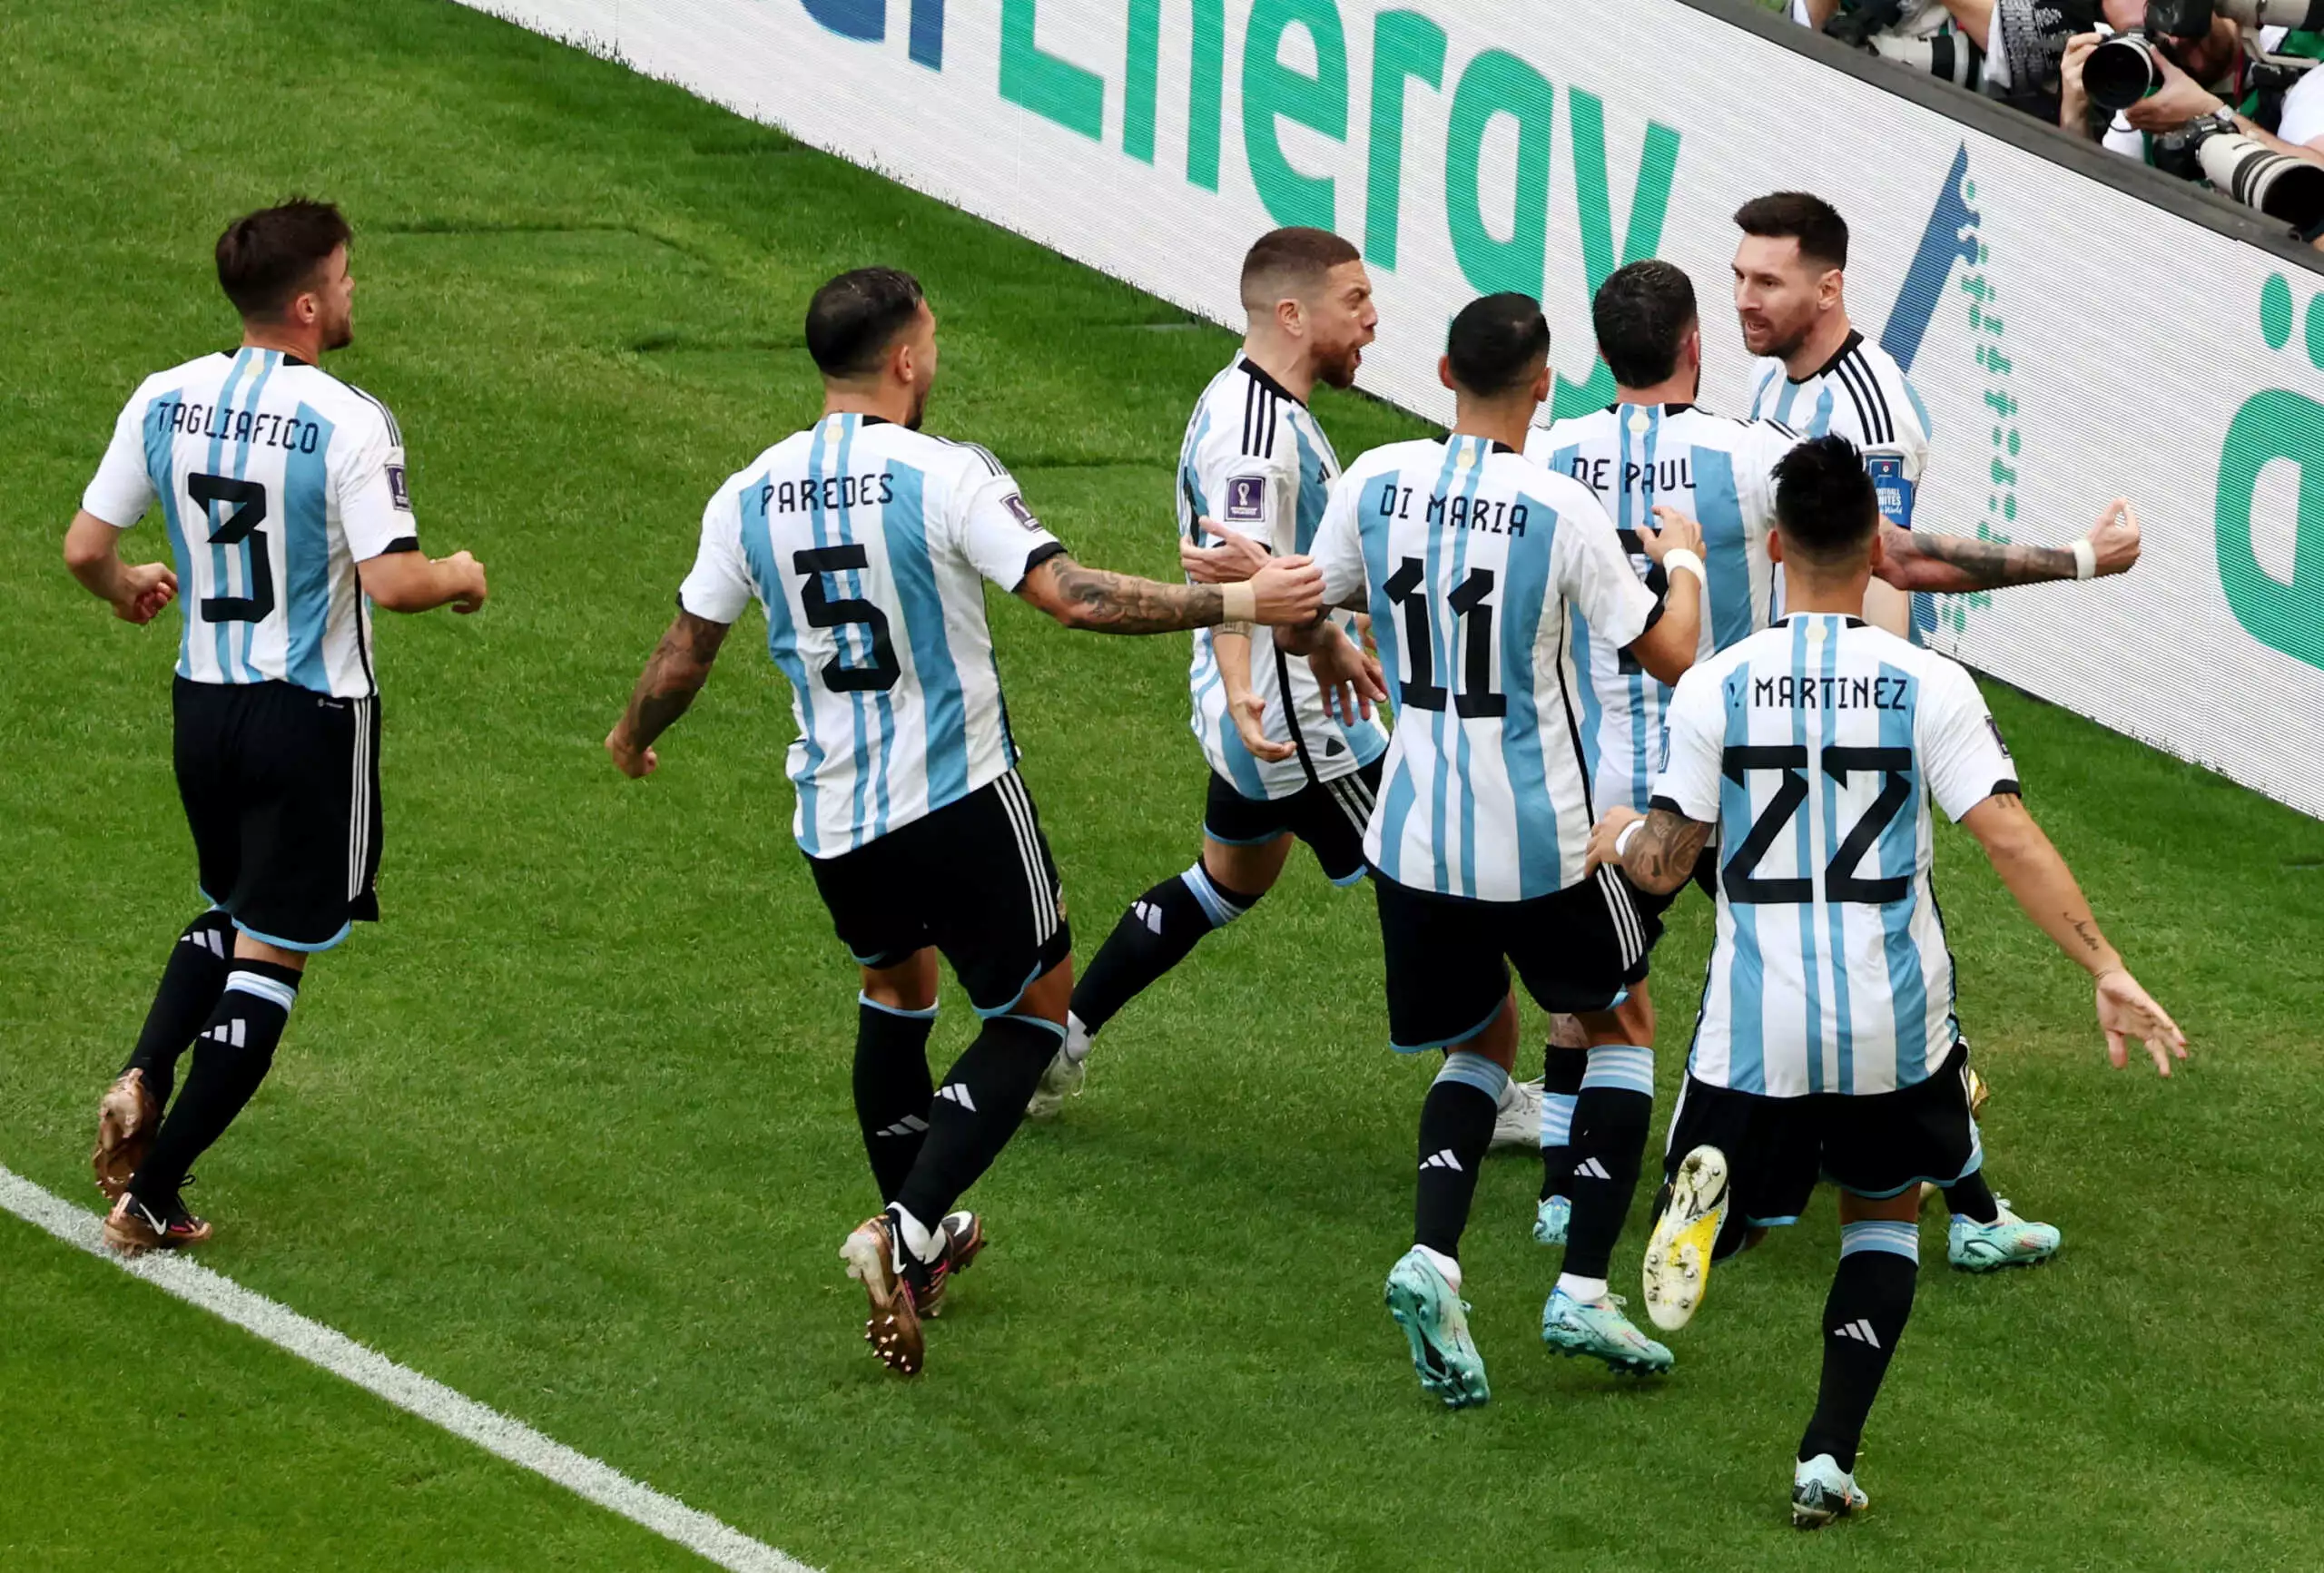 Μουντιάλ 2022: Η Σαουδική Αραβία νίκησε με 1-2 και ανατροπή την Αργεντινή